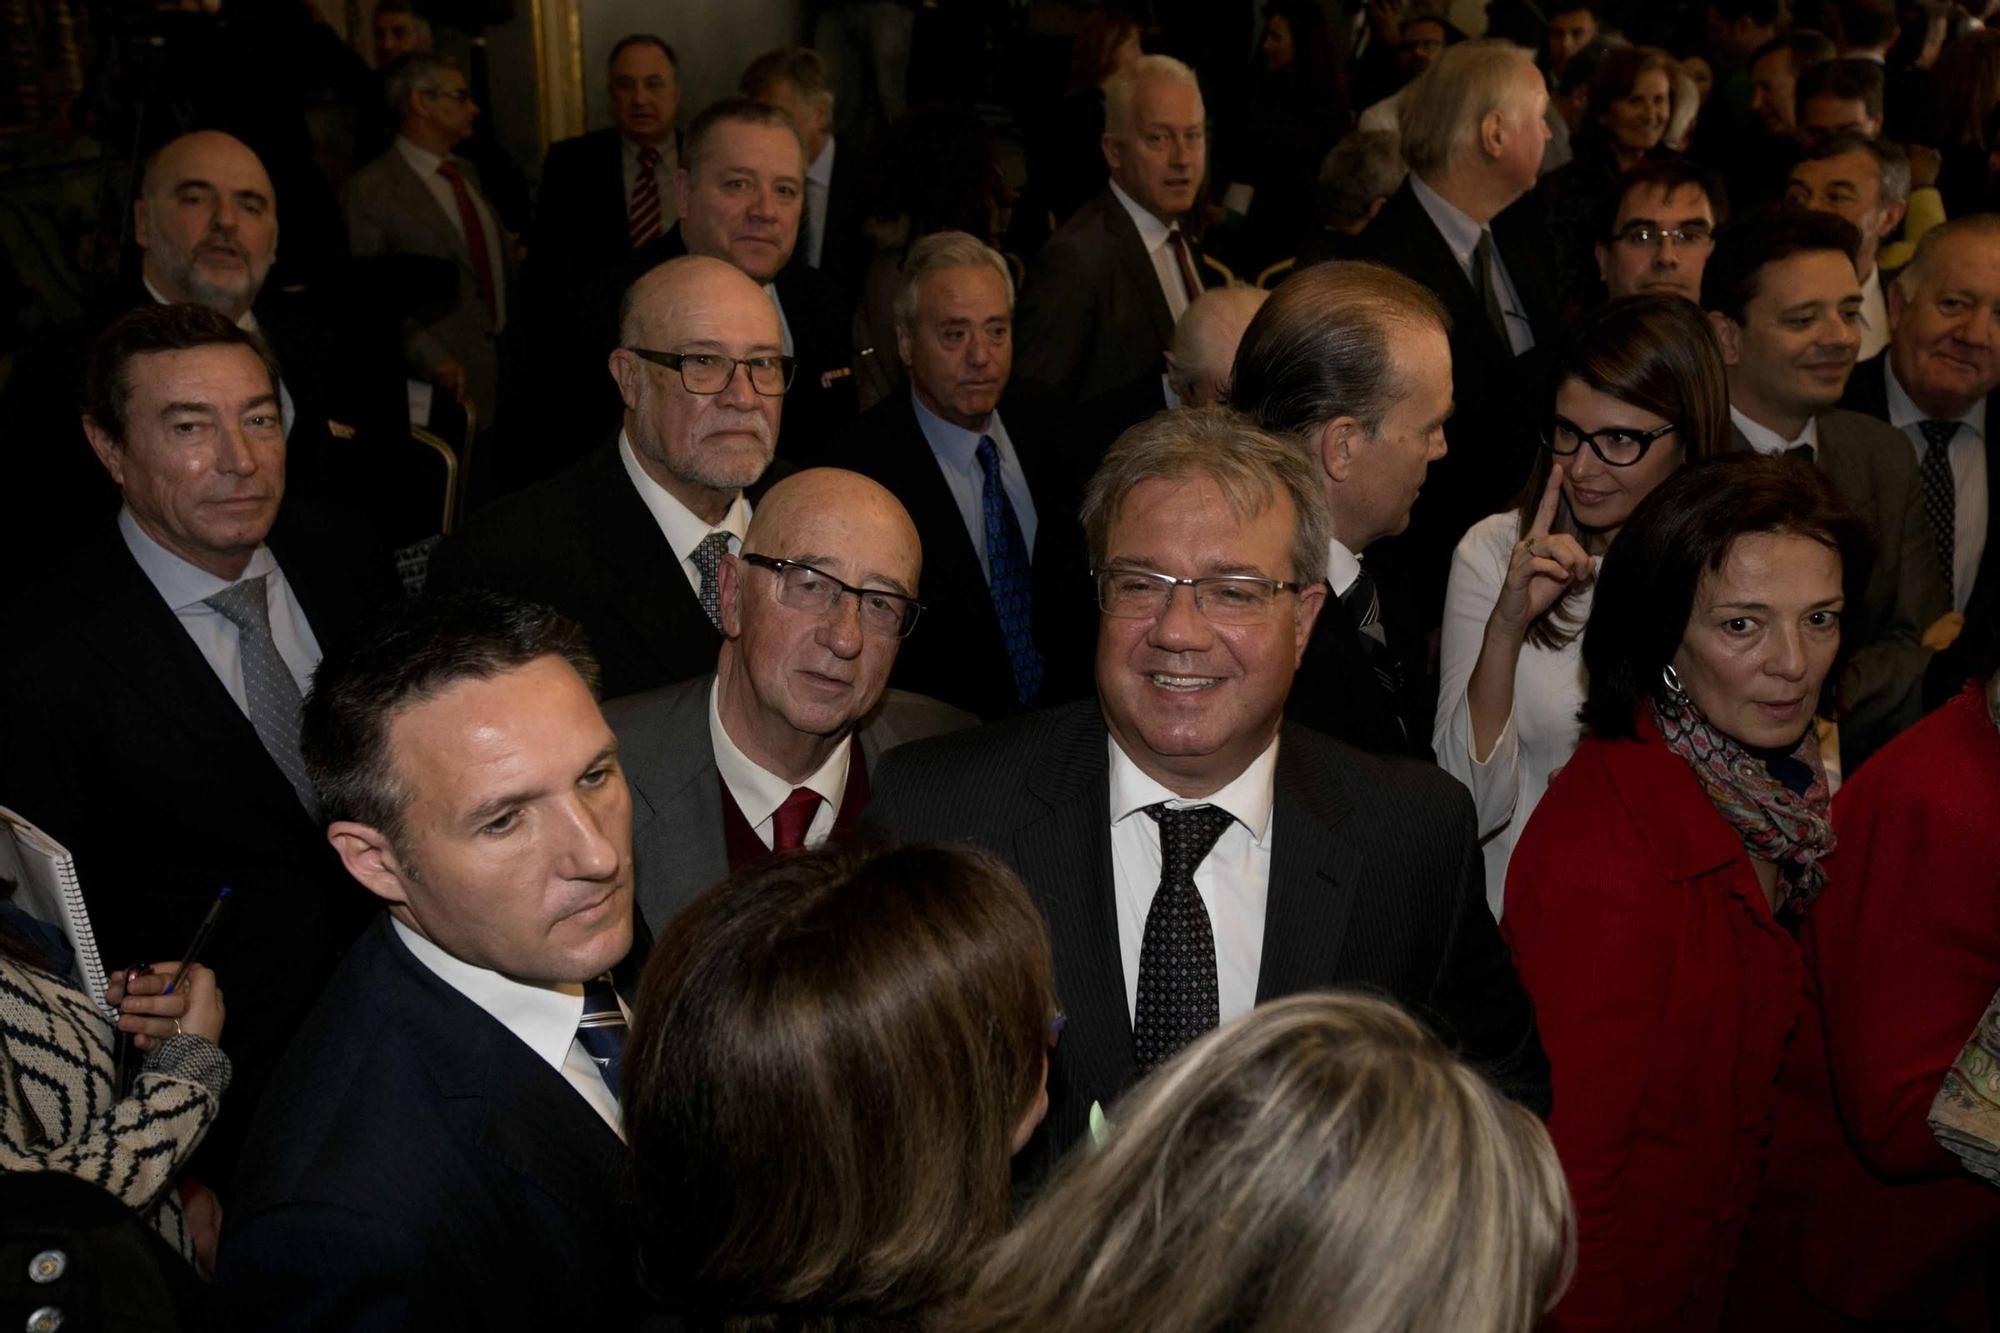 Así fue la investidura de Miguel Valor como alcalde de Alicante el 15 de enero de 2015